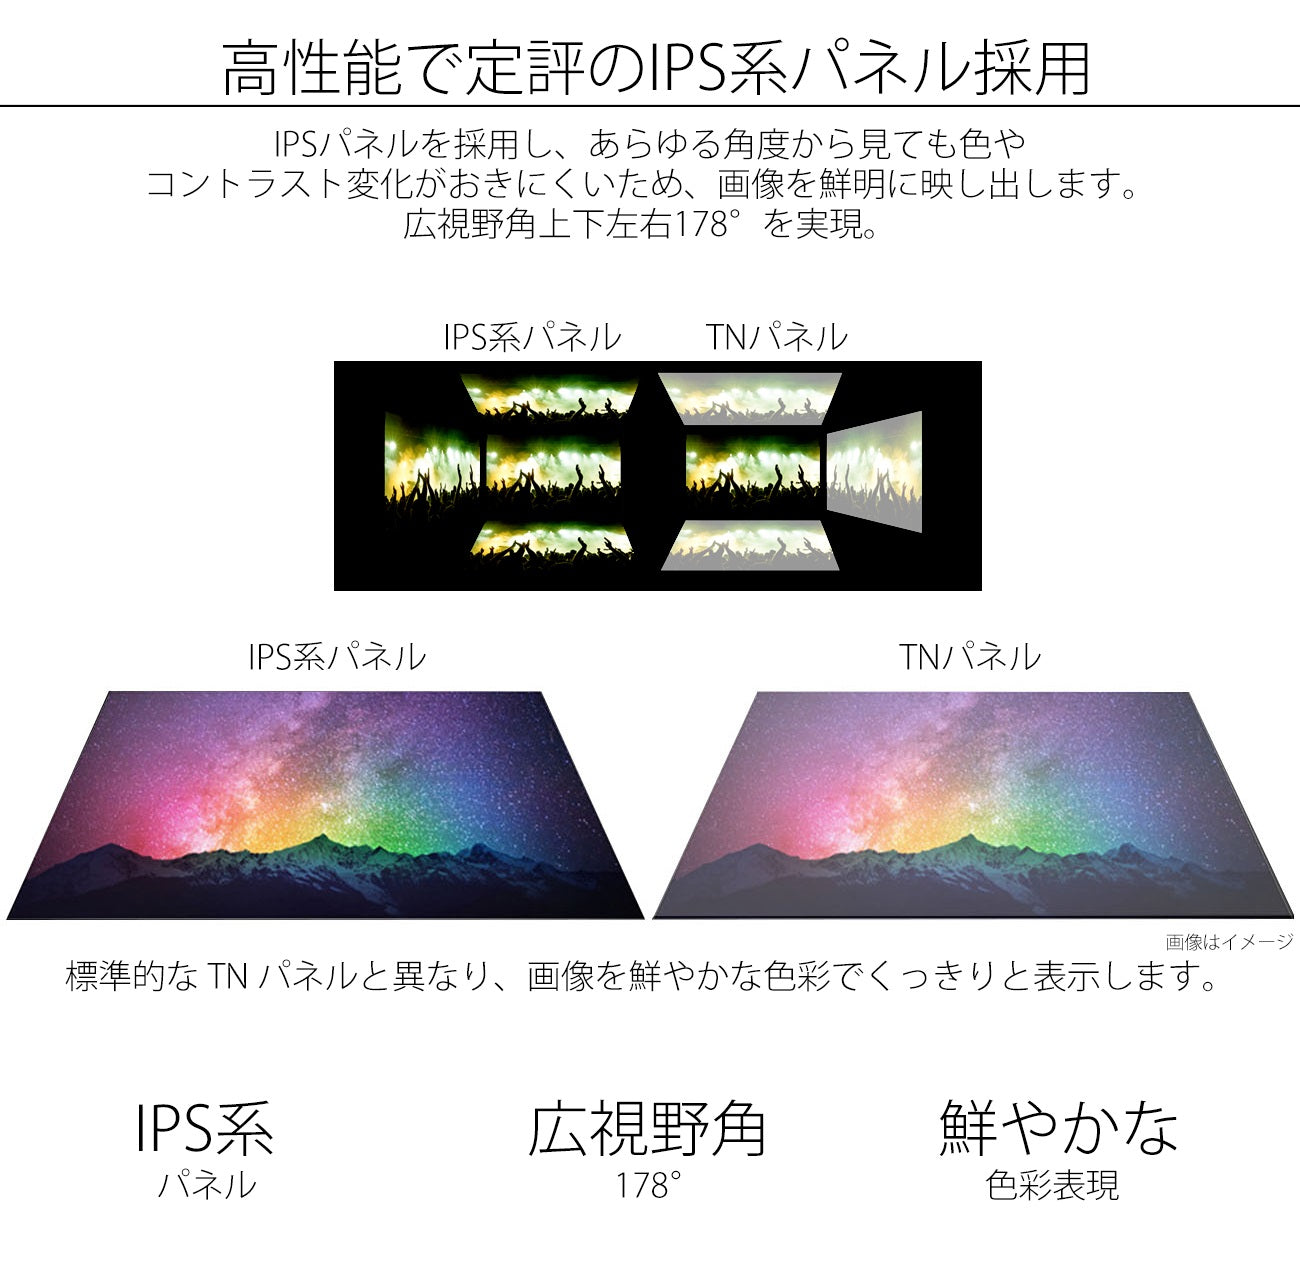 JAPANNEXT 25.7インチ ワイドFHD(2560 x 1080) 液晶モニター JN 